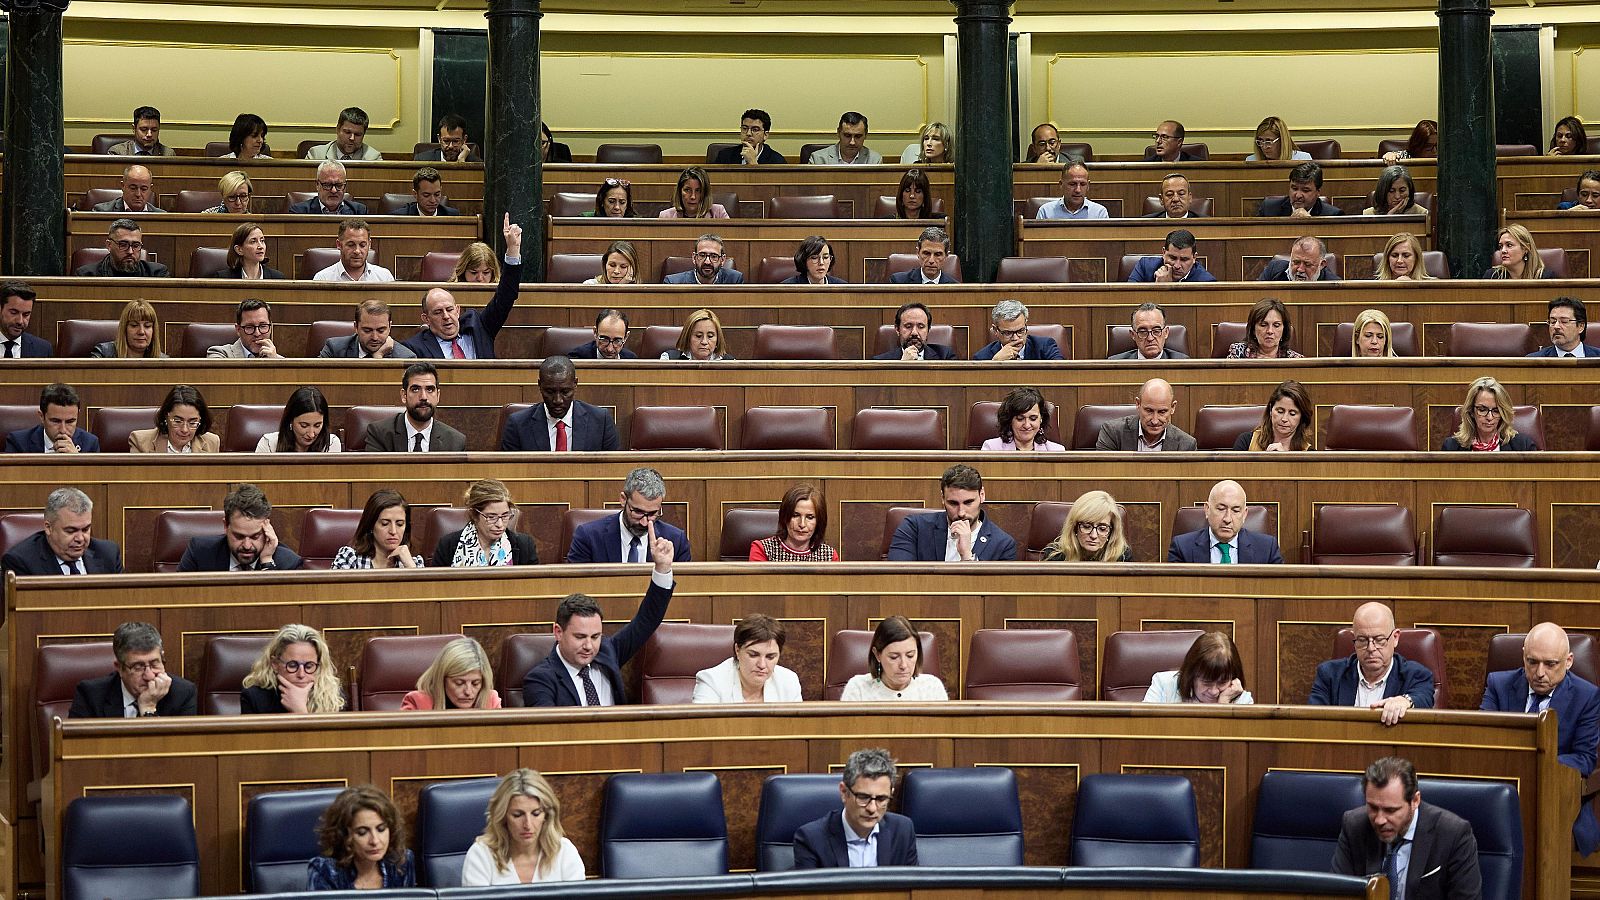 Vista general de una sesión plenaria en el Congreso de los Diputados